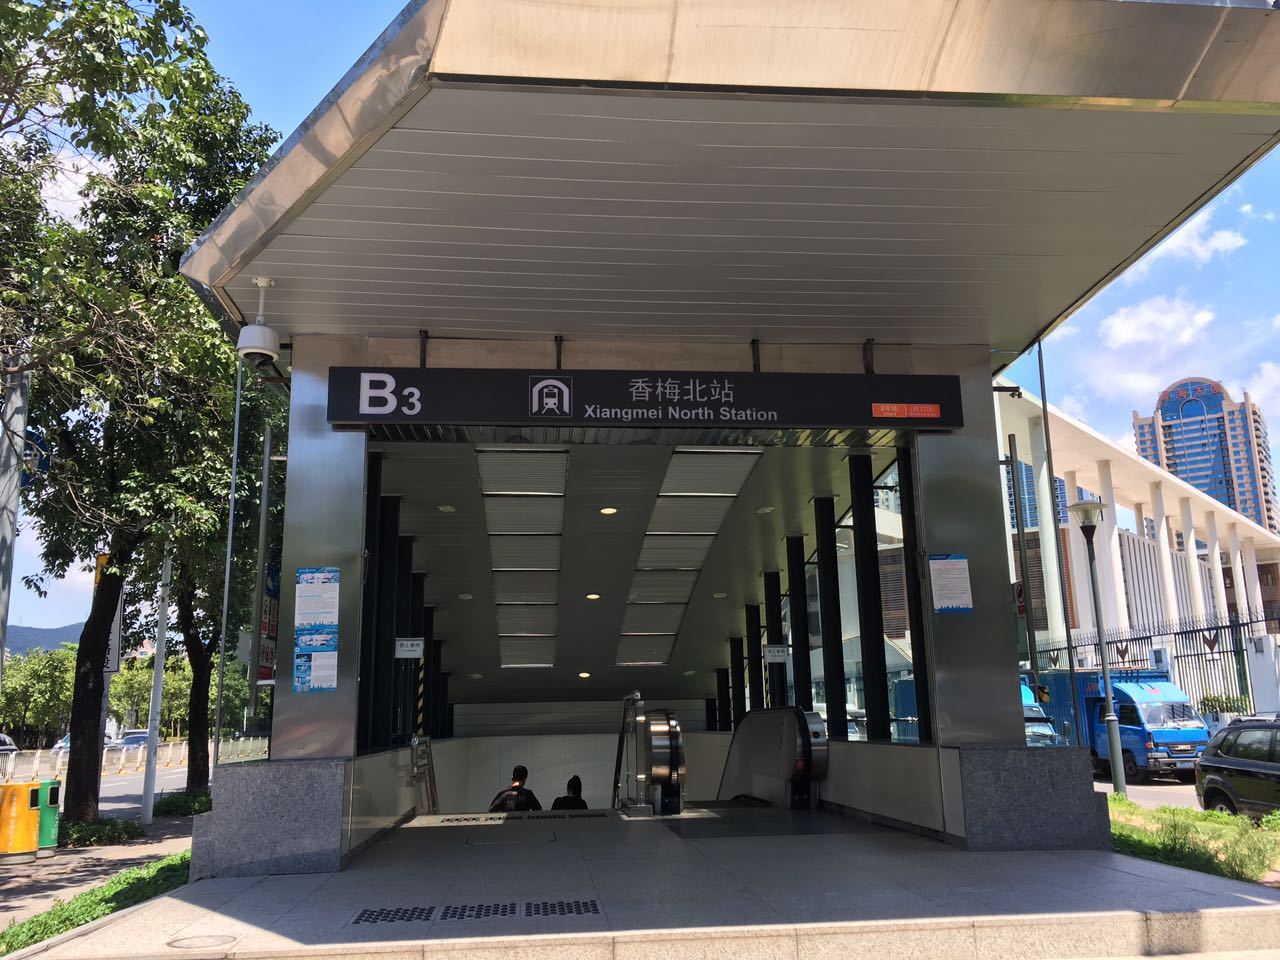 如上图所示,即为香景大厦小区附近地铁二号线香梅北站b